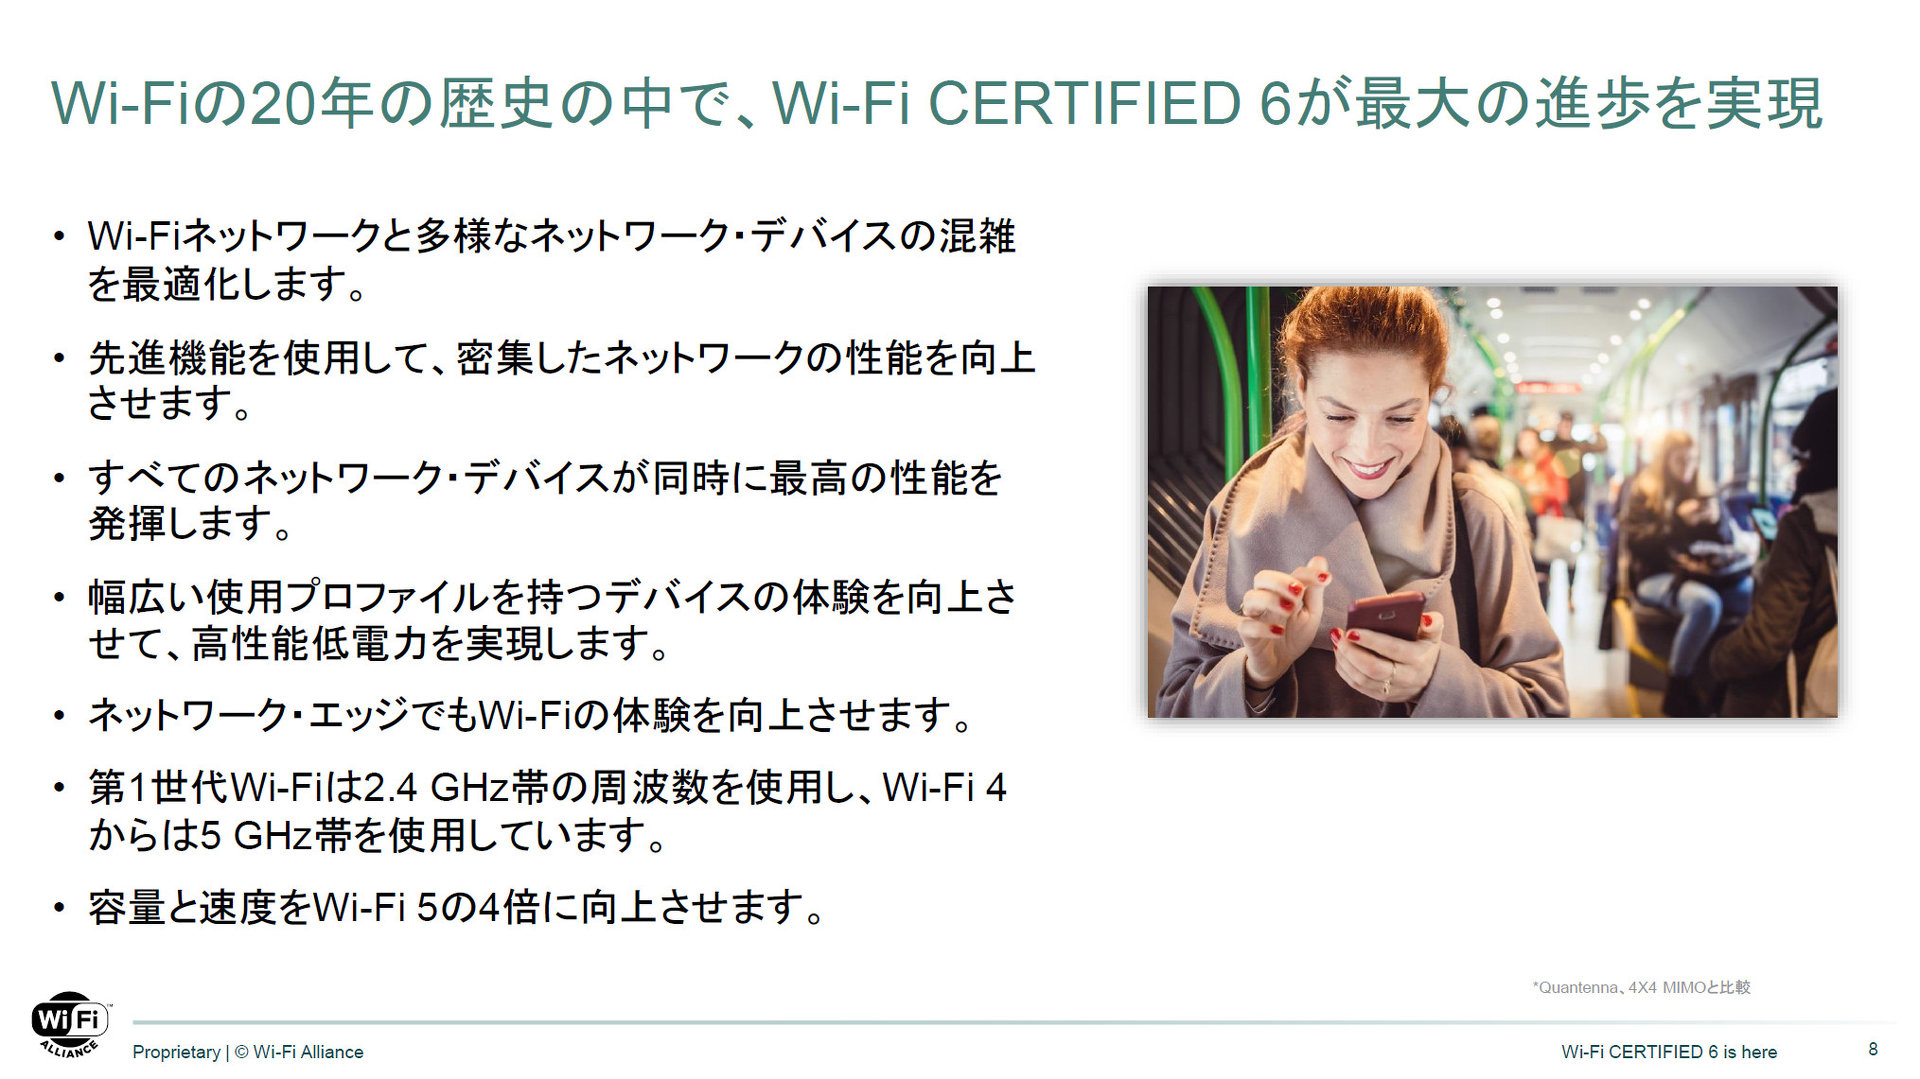  Wi-Fi 6̐iiNbNŊgj oTFWi-Fi Alliance